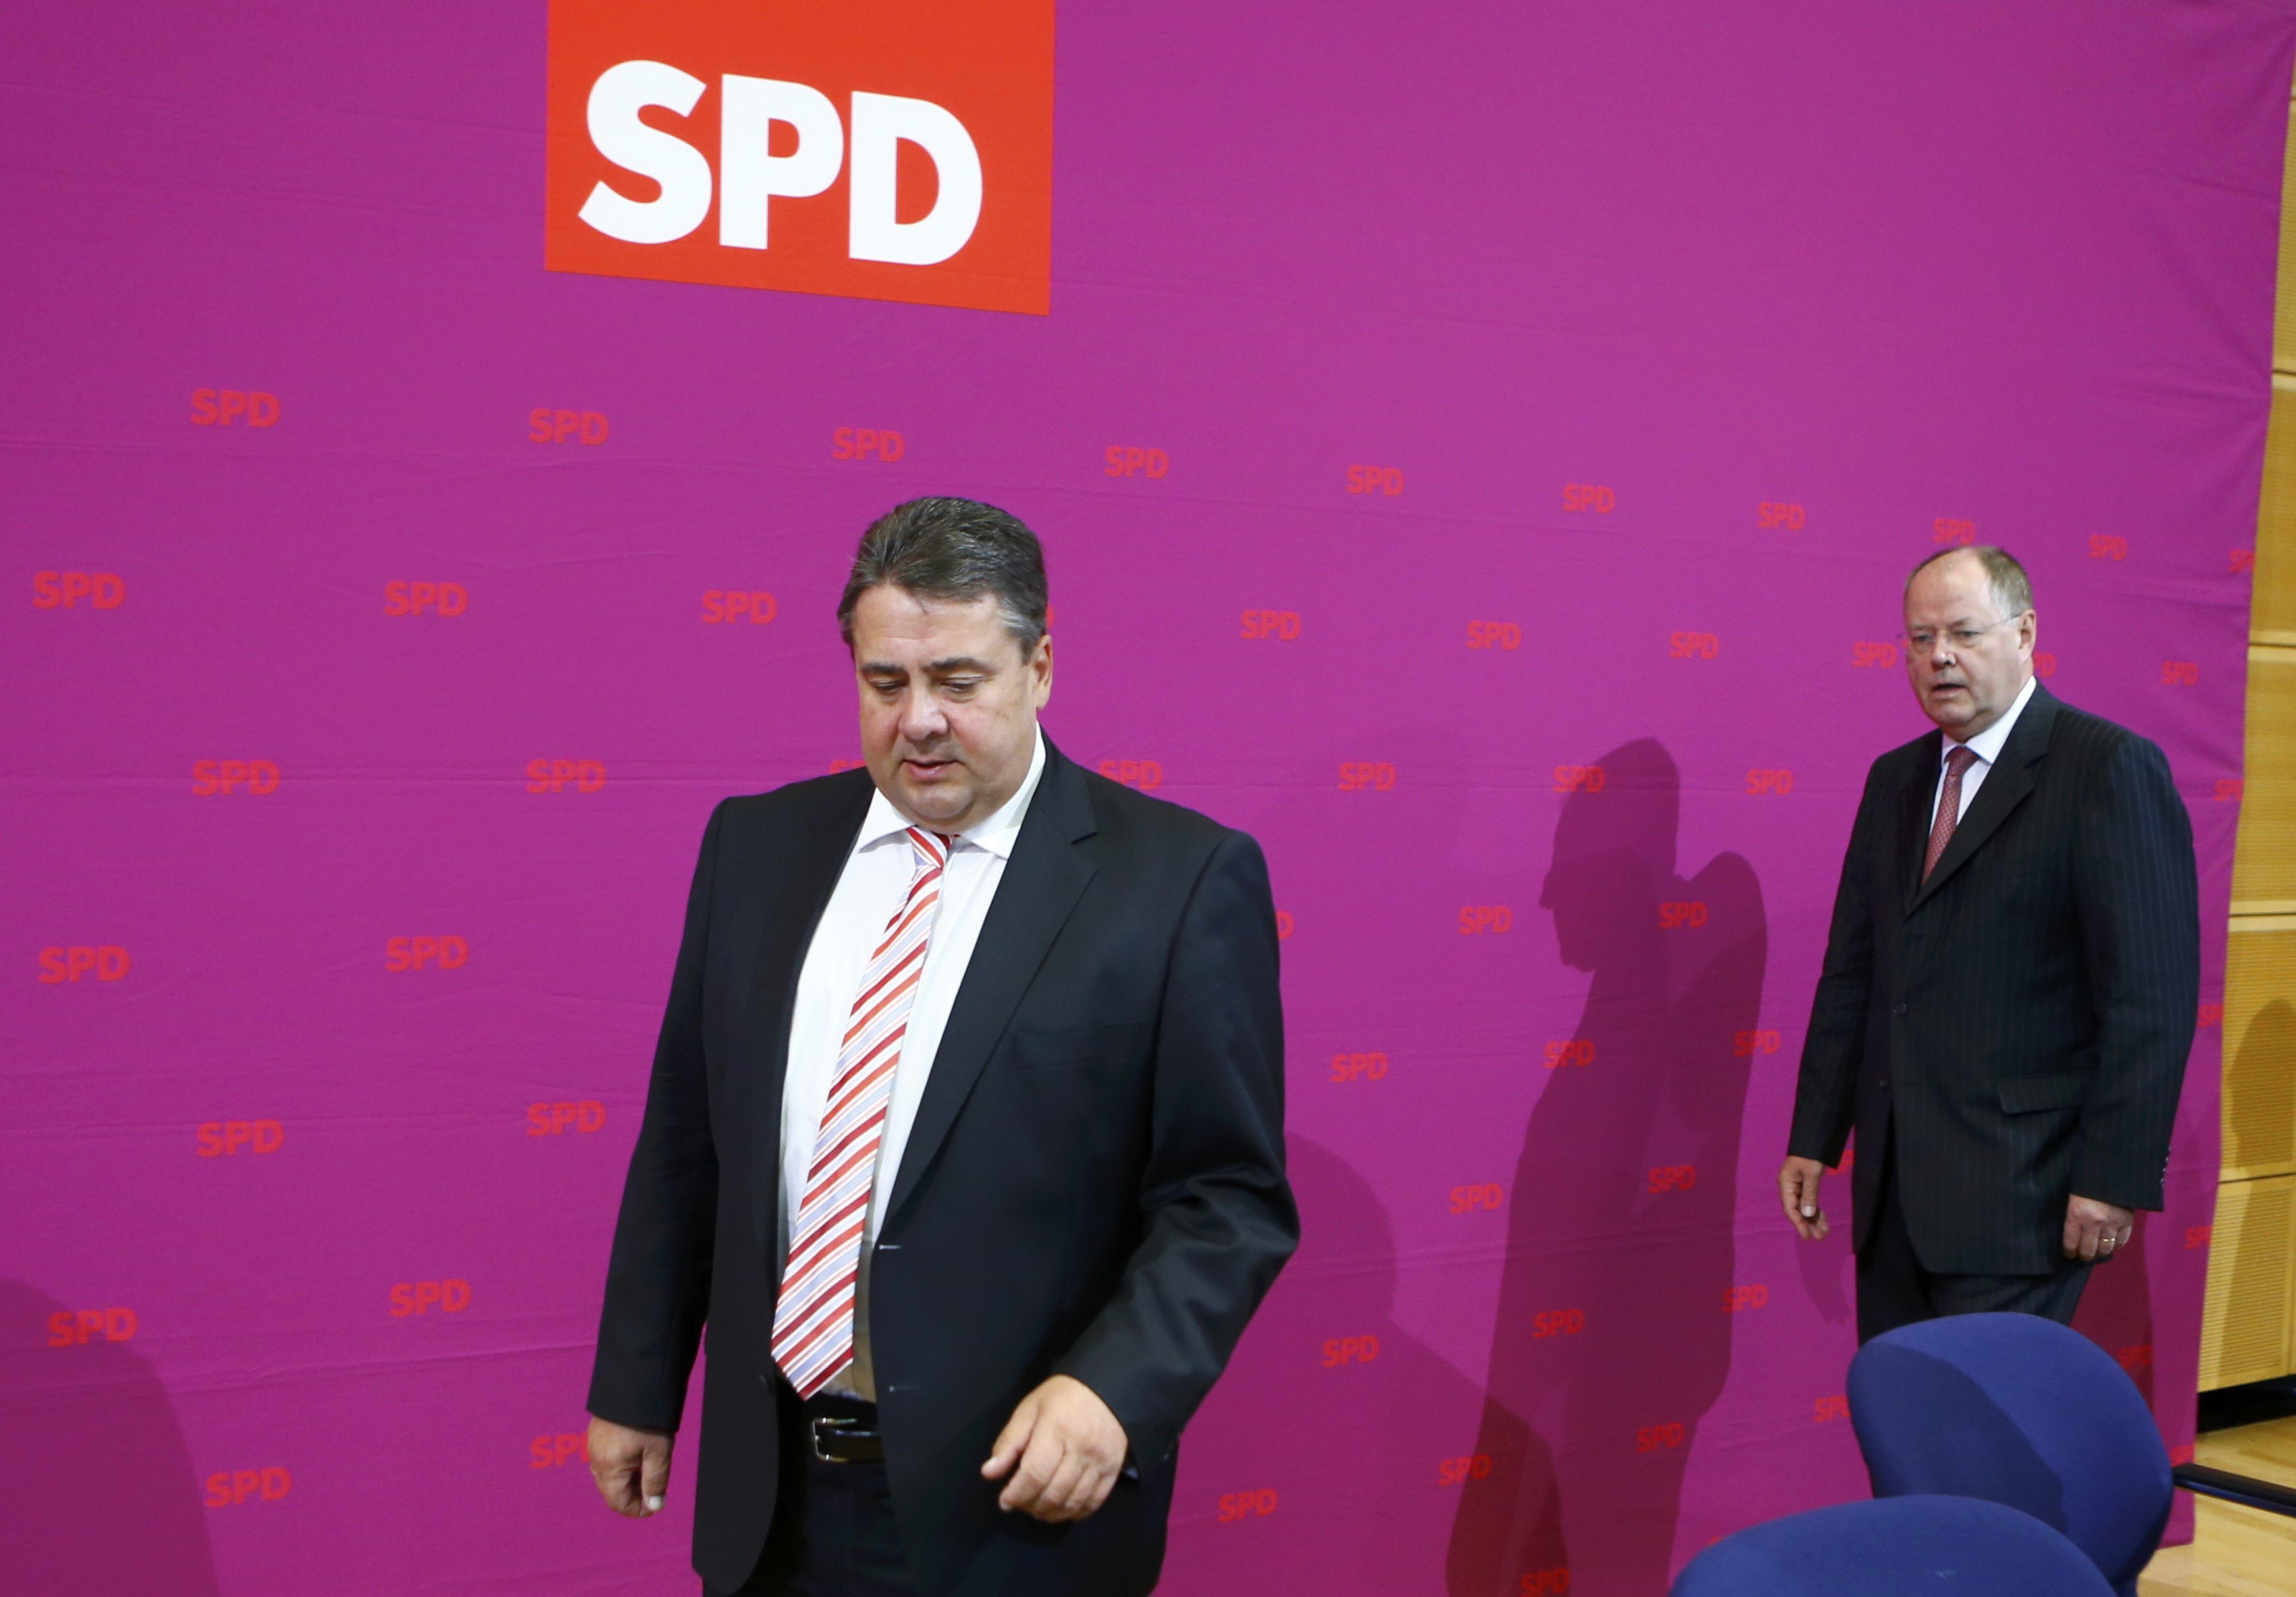 “Ανοιχτοί σε διαπραγματεύσεις με το κόμμα της Μέρκελ”, είπε ο πρόεδρος του SPD